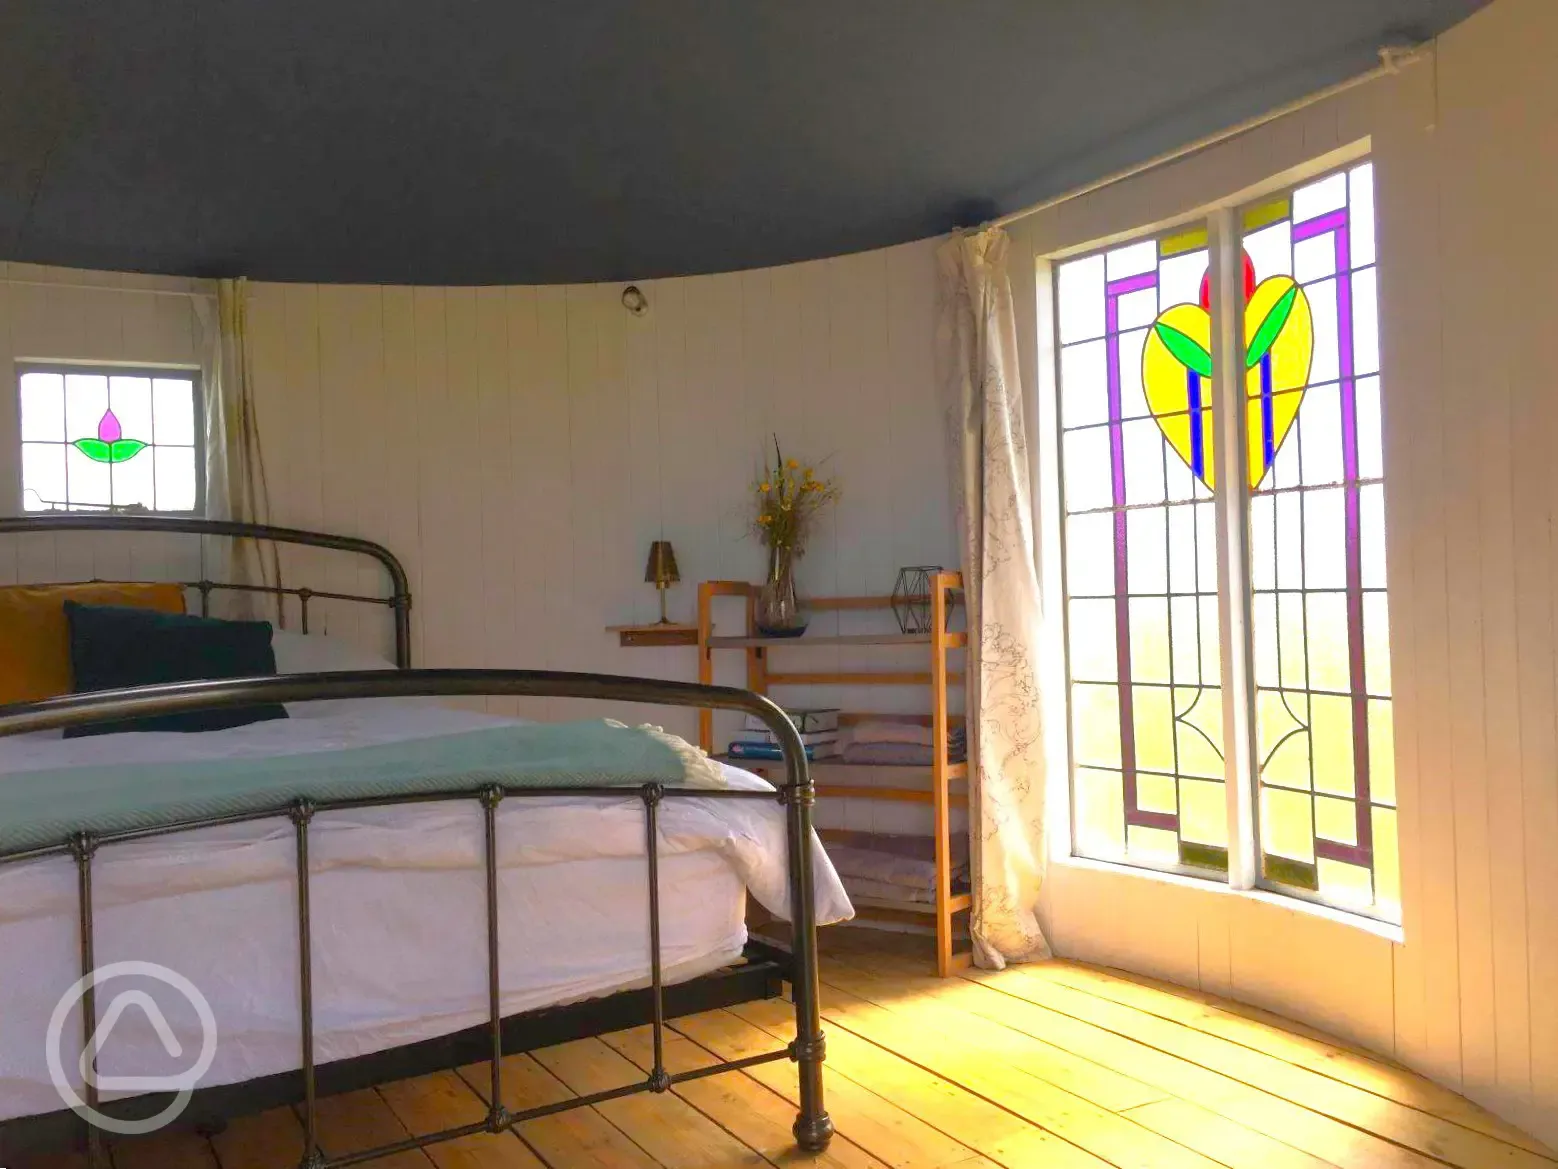 Queen of Hearts yurt interior